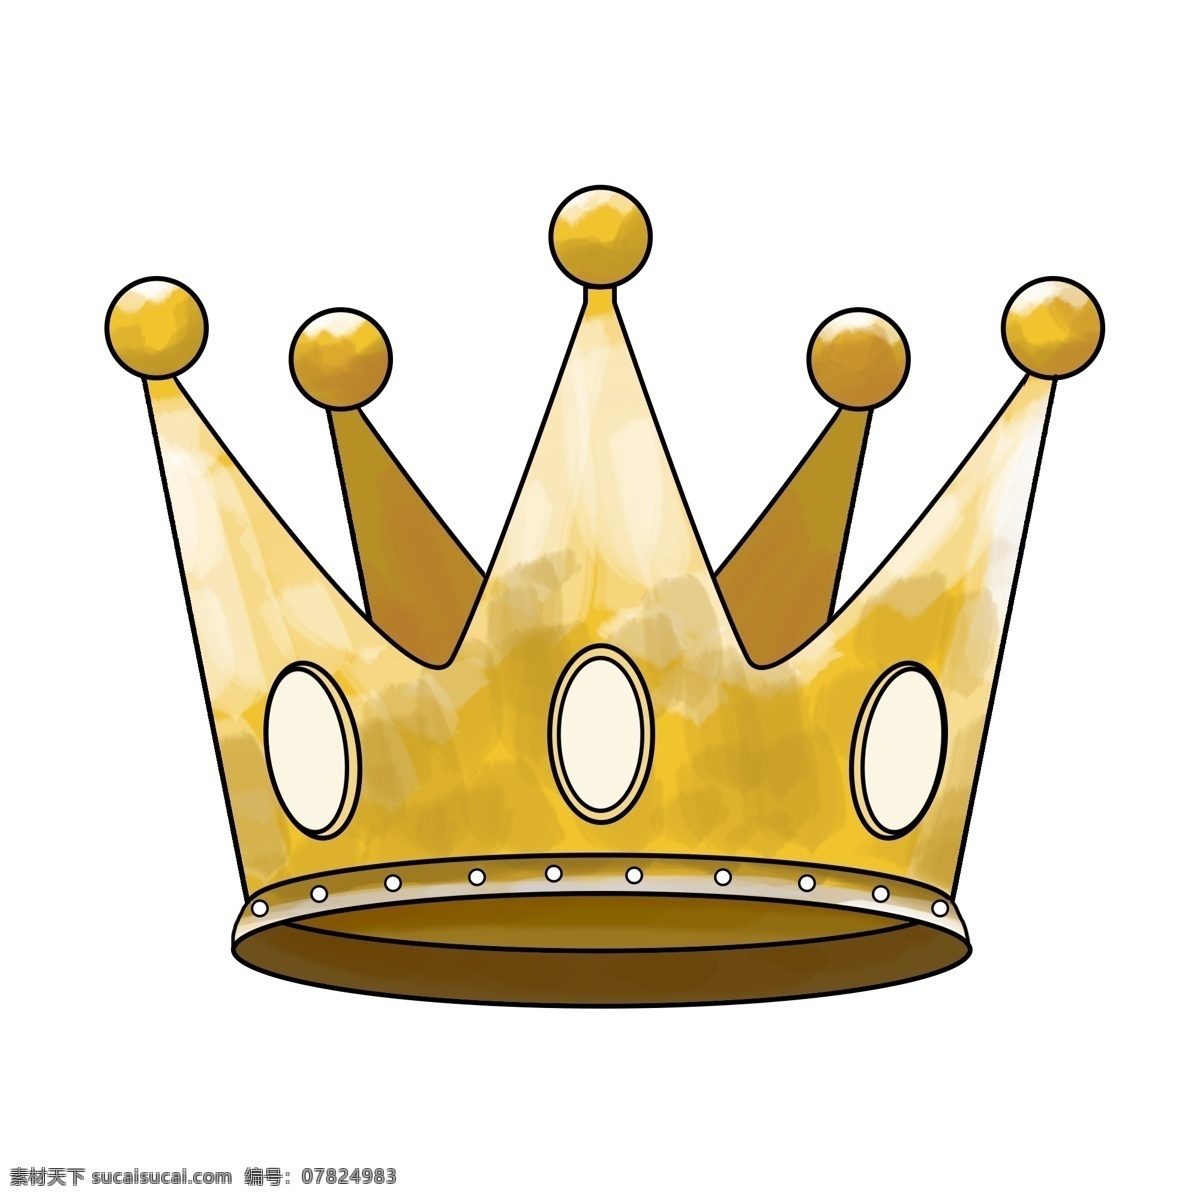 皇冠 手绘 王冠 金色 金色皇冠 金子 金属材质 王国 高贵 皇家 帽子 国王 king